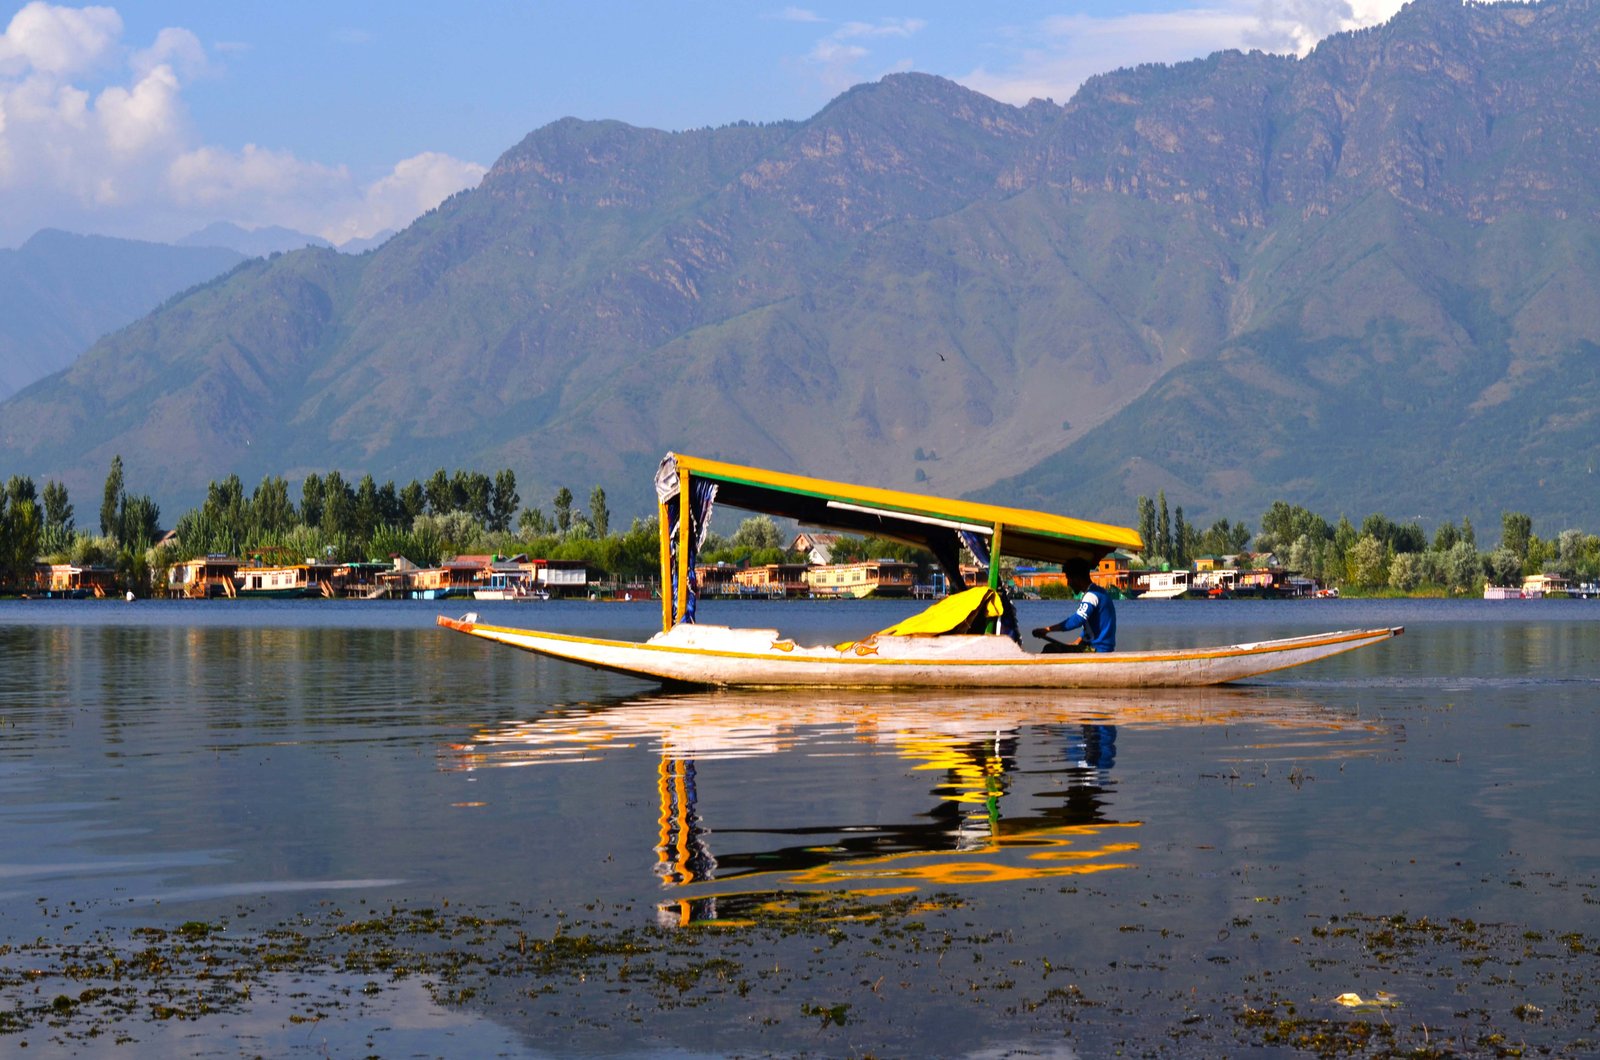 Dal lake - Srinagar